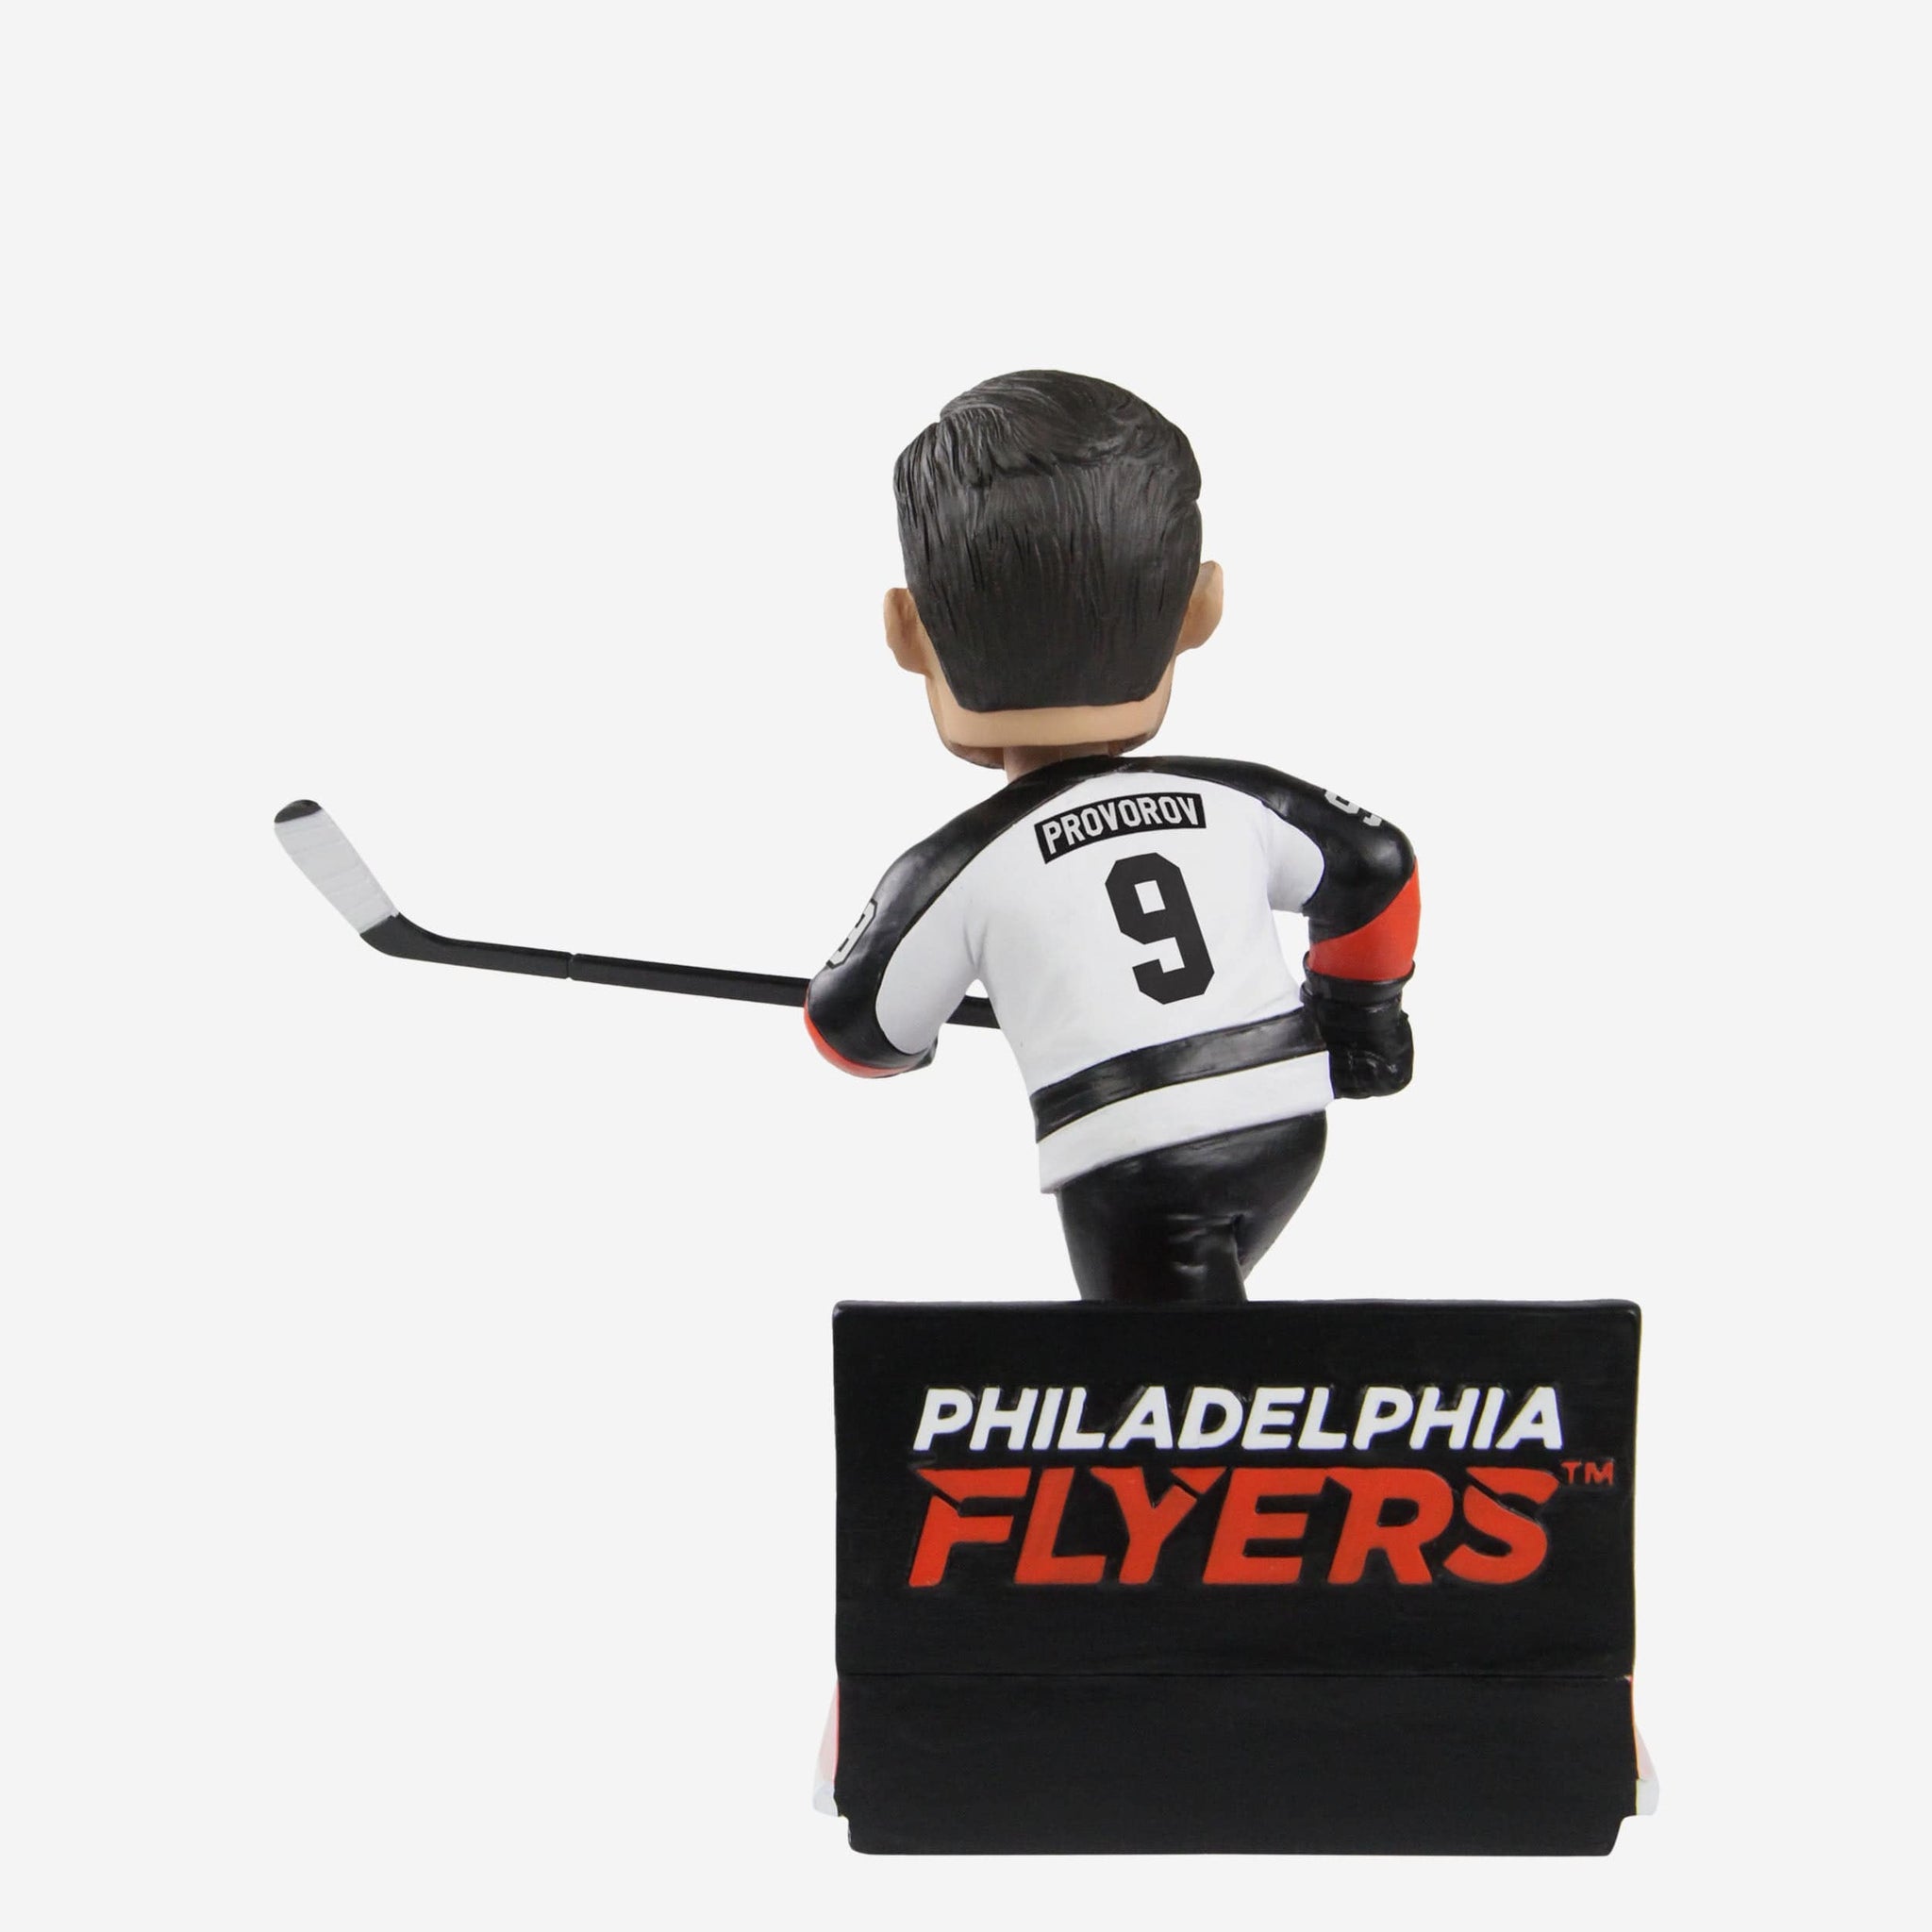 Philadelphia Flyers '22 Reverse Retro Authentic Pro Hoodie